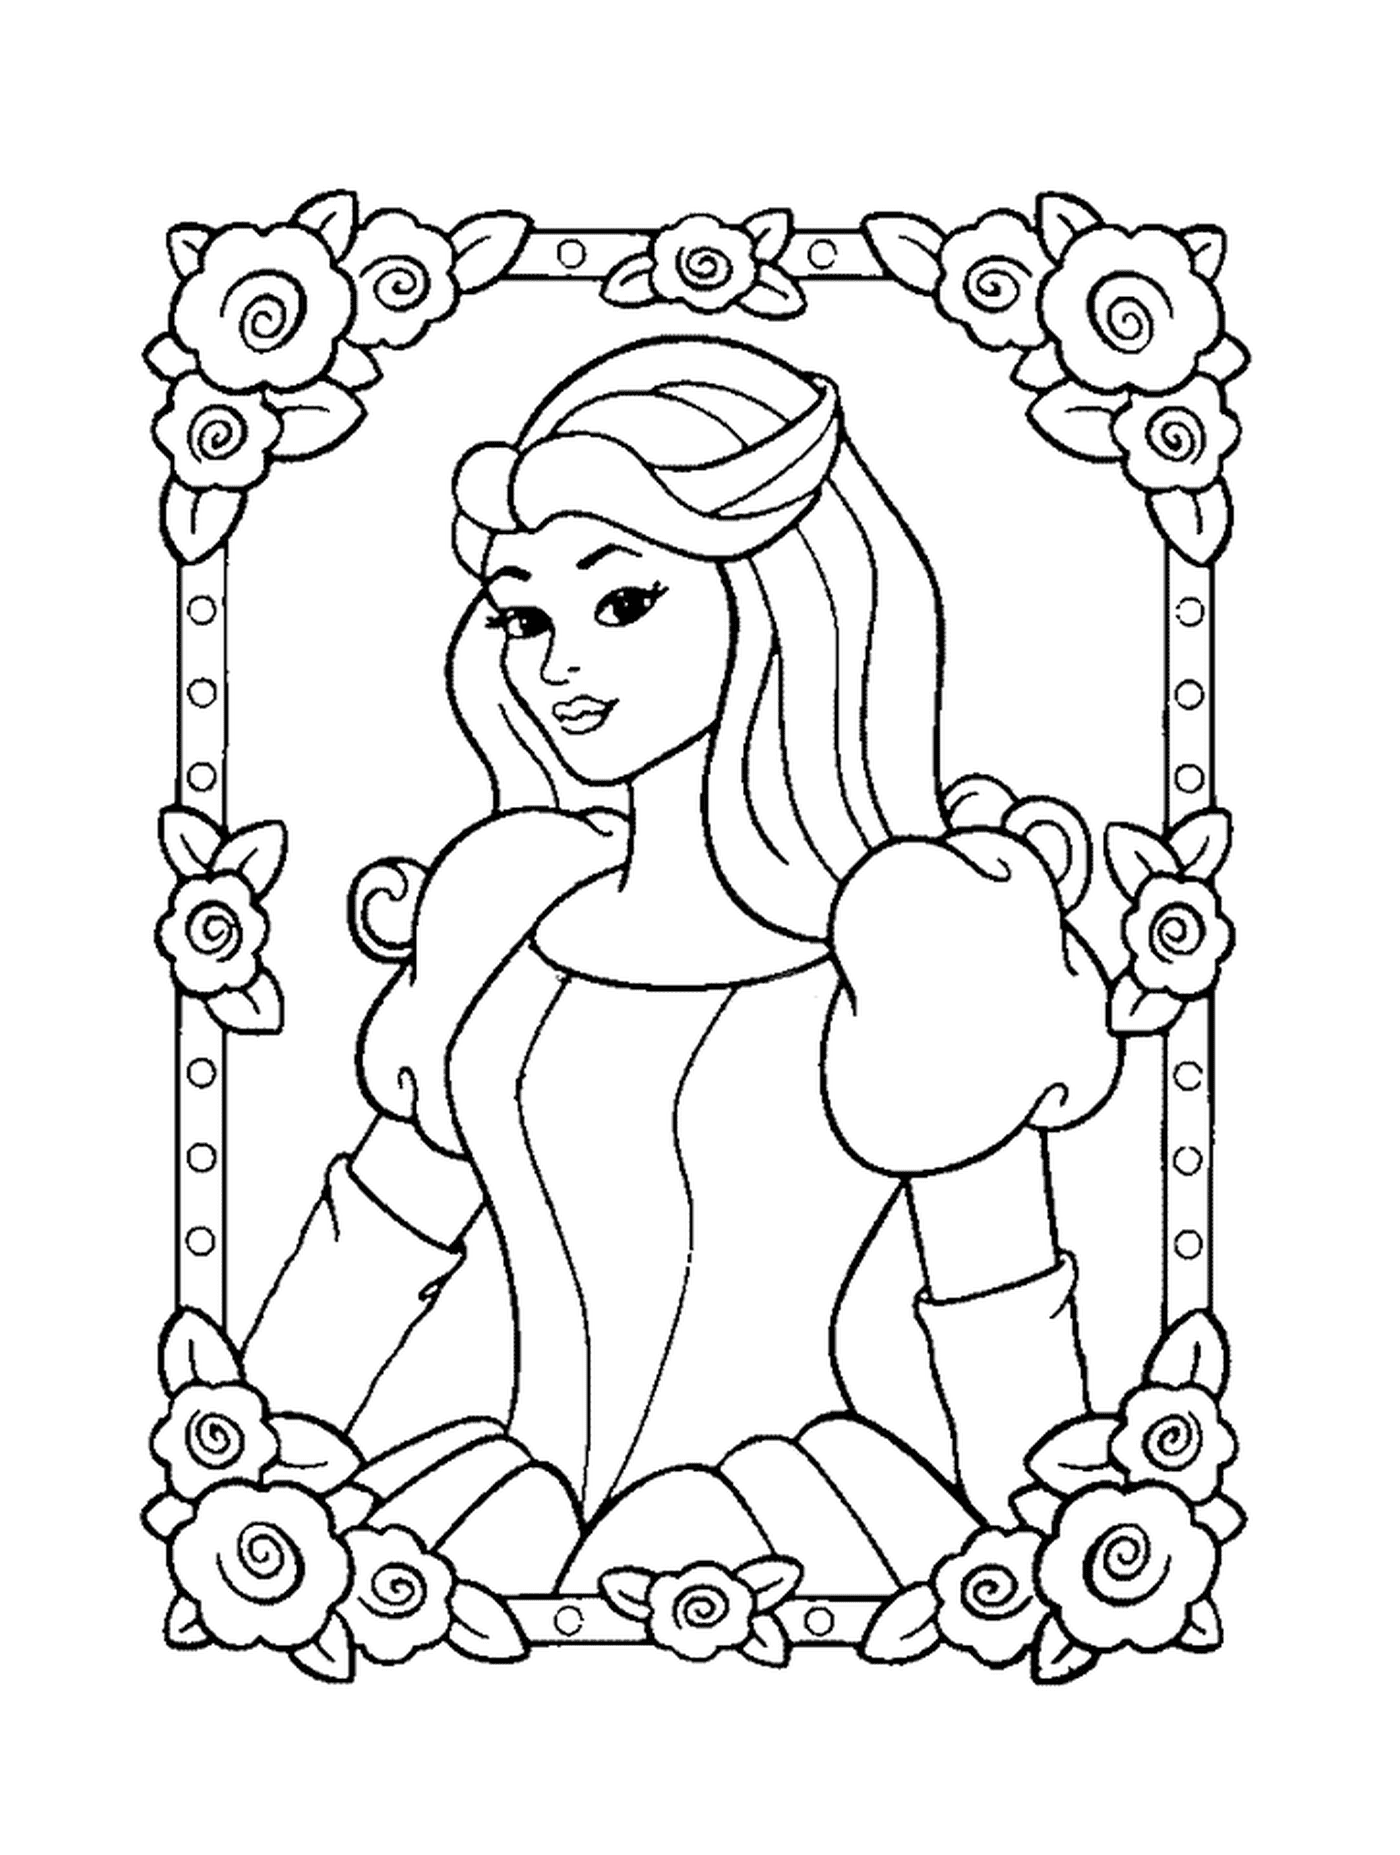  Princesa Disney, uma mulher com uma moldura de flor em torno dela 